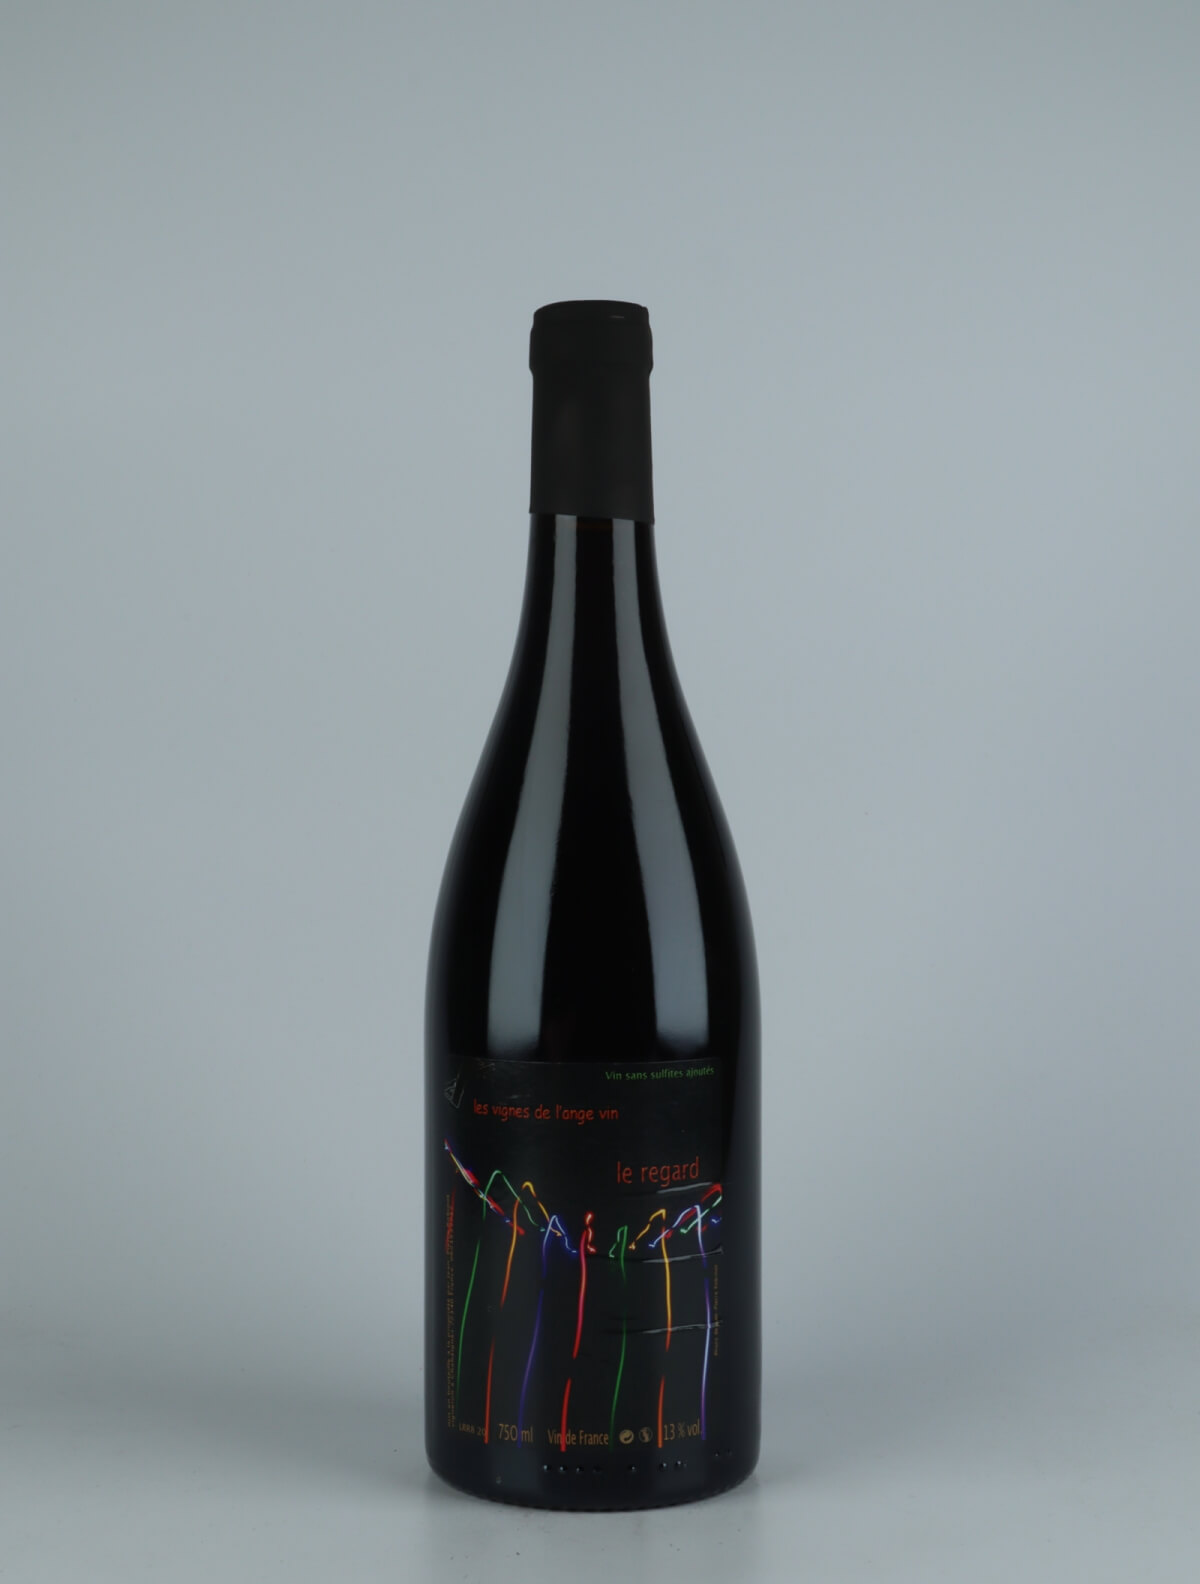 En flaske 2020 Le Regard Rødvin fra Jean-Pierre Robinot, Loire i Frankrig